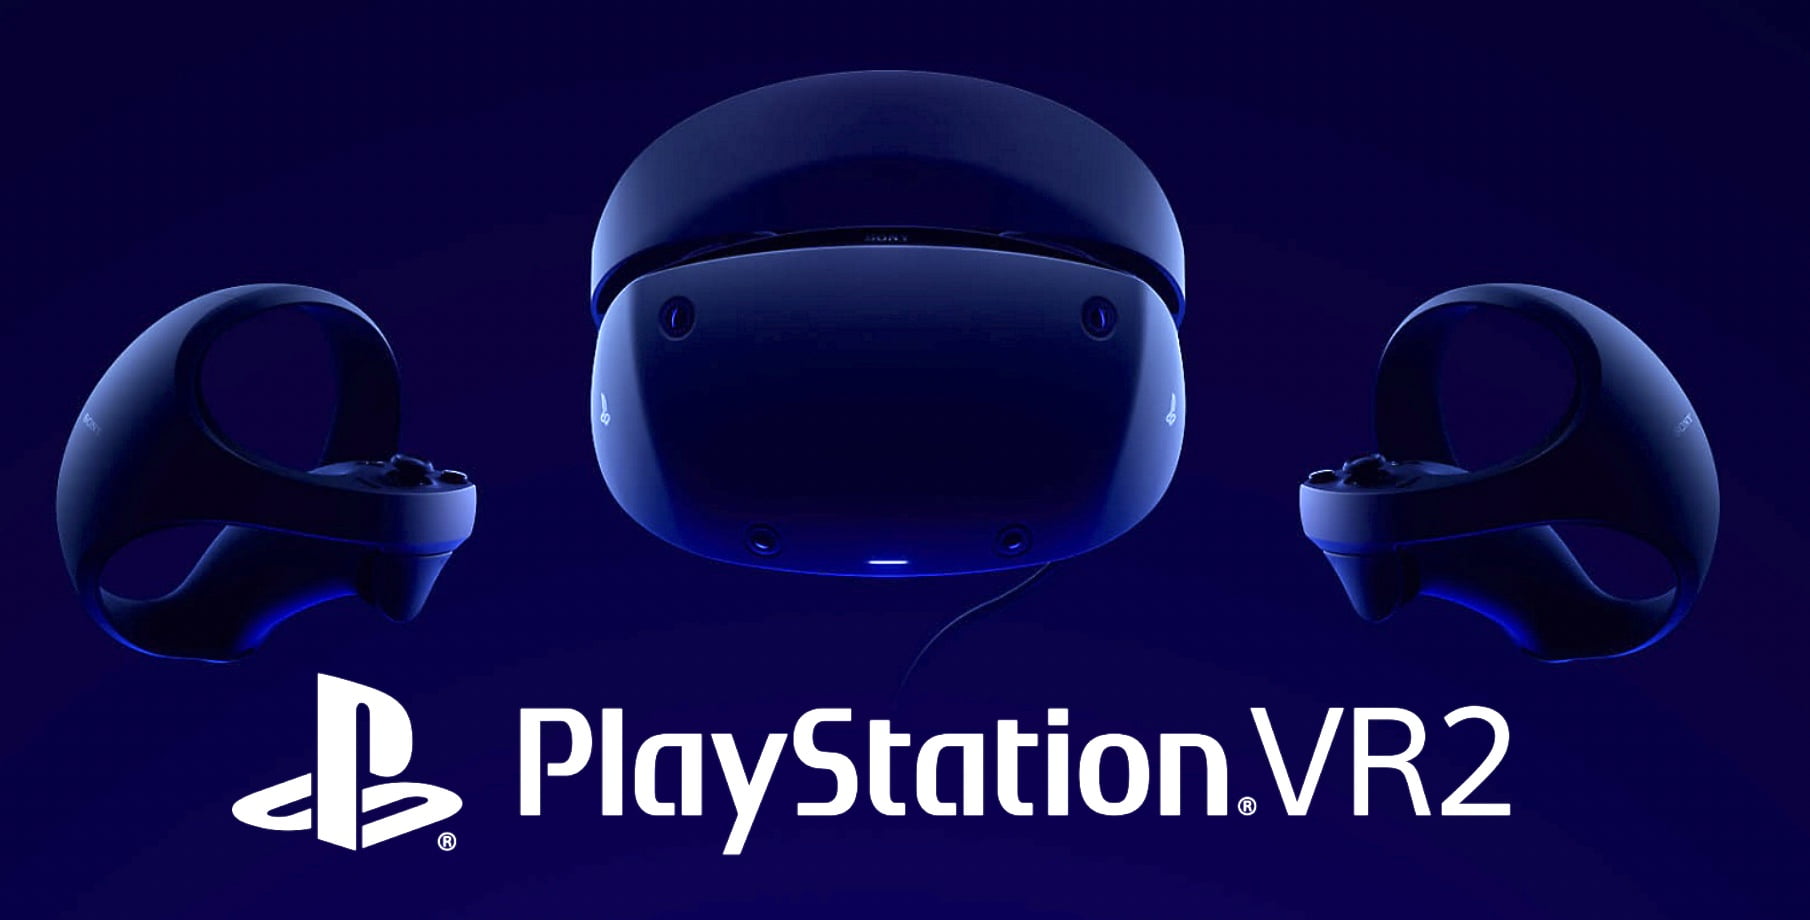 Du kan registrera dig nu för PlayStation VR 2 förbeställningsmeddelanden.